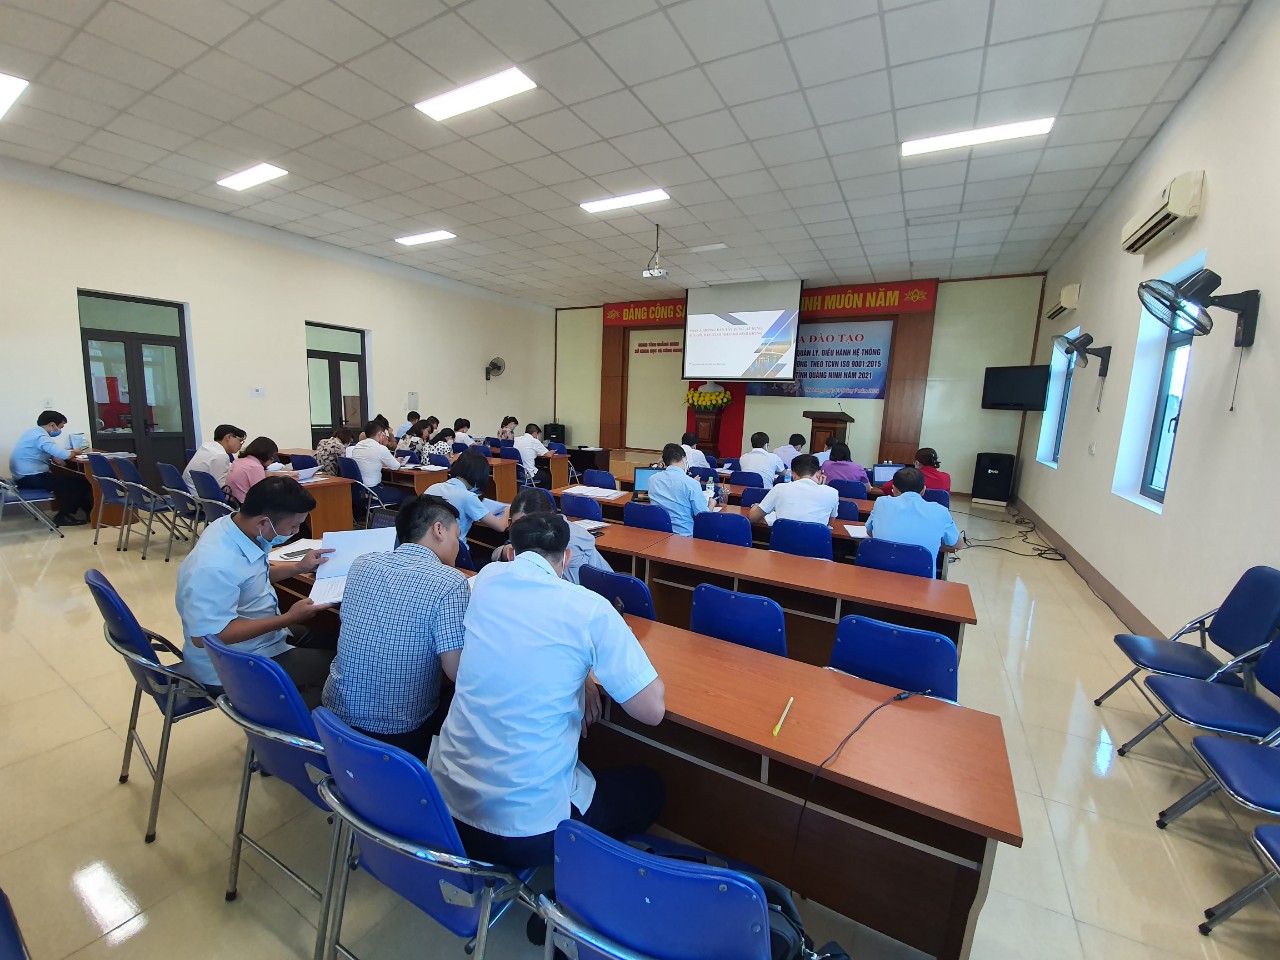 khóa đào tạo chuyên sâu về HTQLCL theo TCVN ISO 9001:2015 tại Quảng Ninh năm 2021